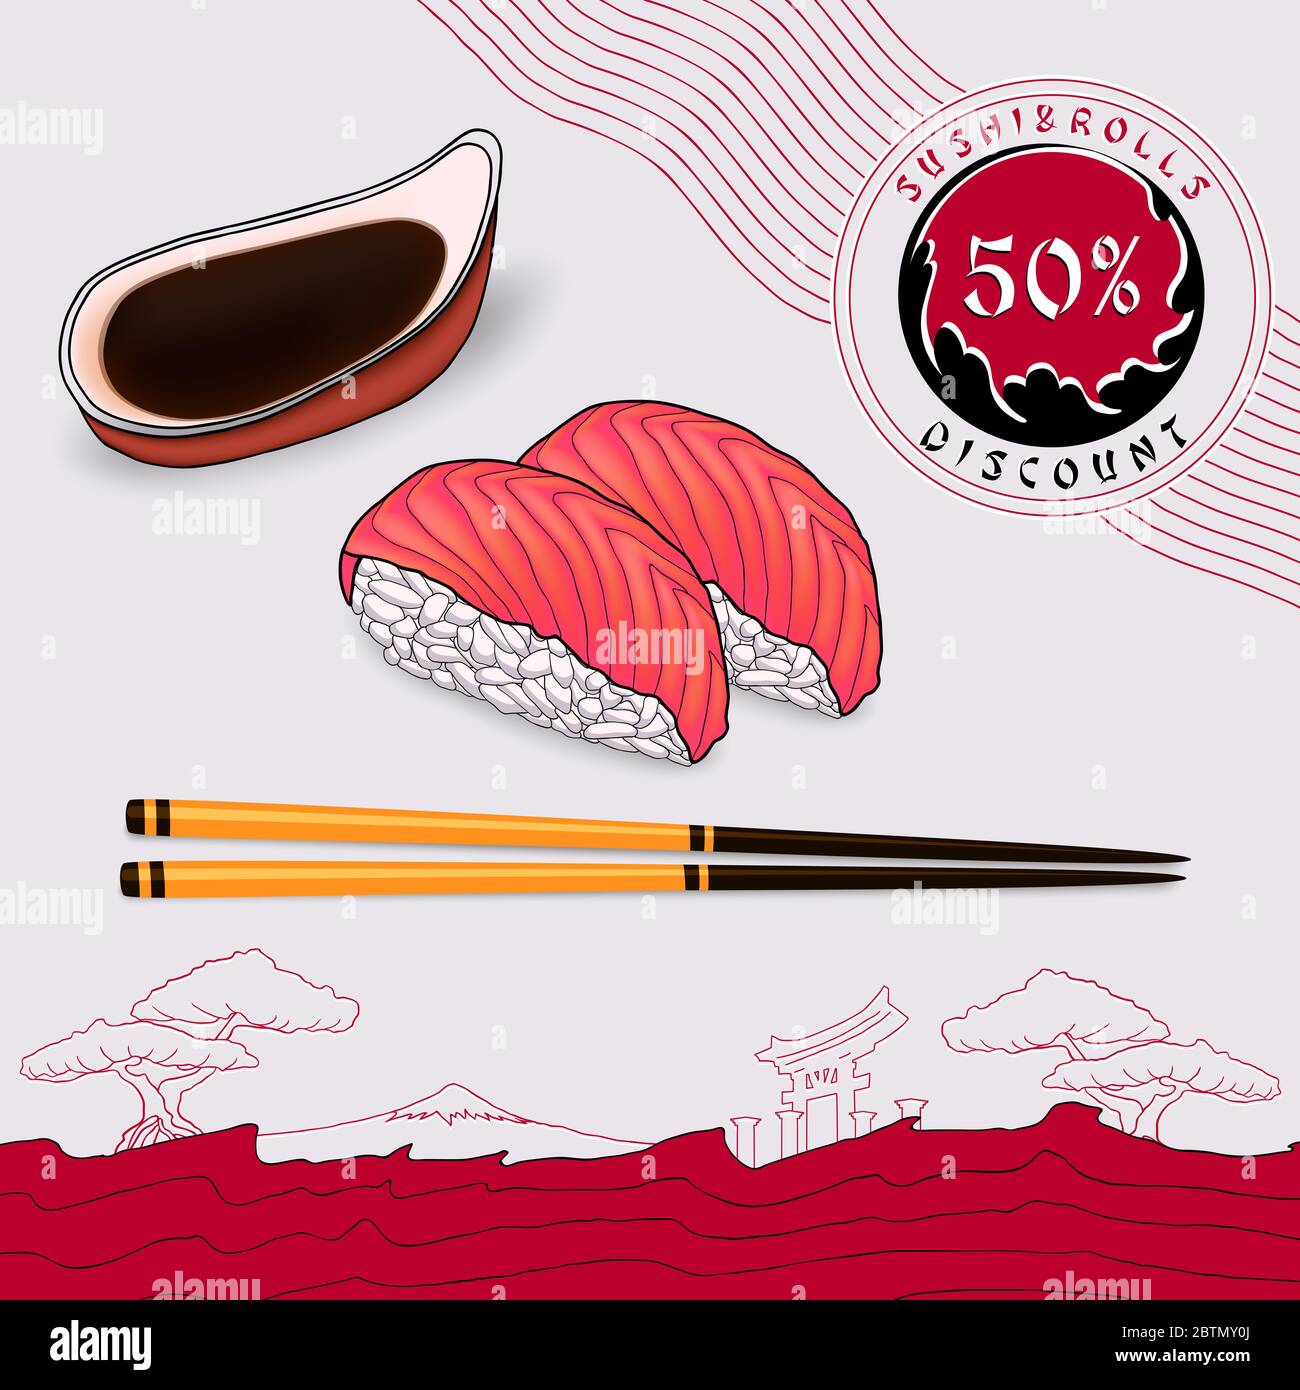 bon de réduction sushi japonais avec saumon frais et sauce soja dans un bol avec baguettes sur une assiette gris clair avec une bande rouge Banque D'Images